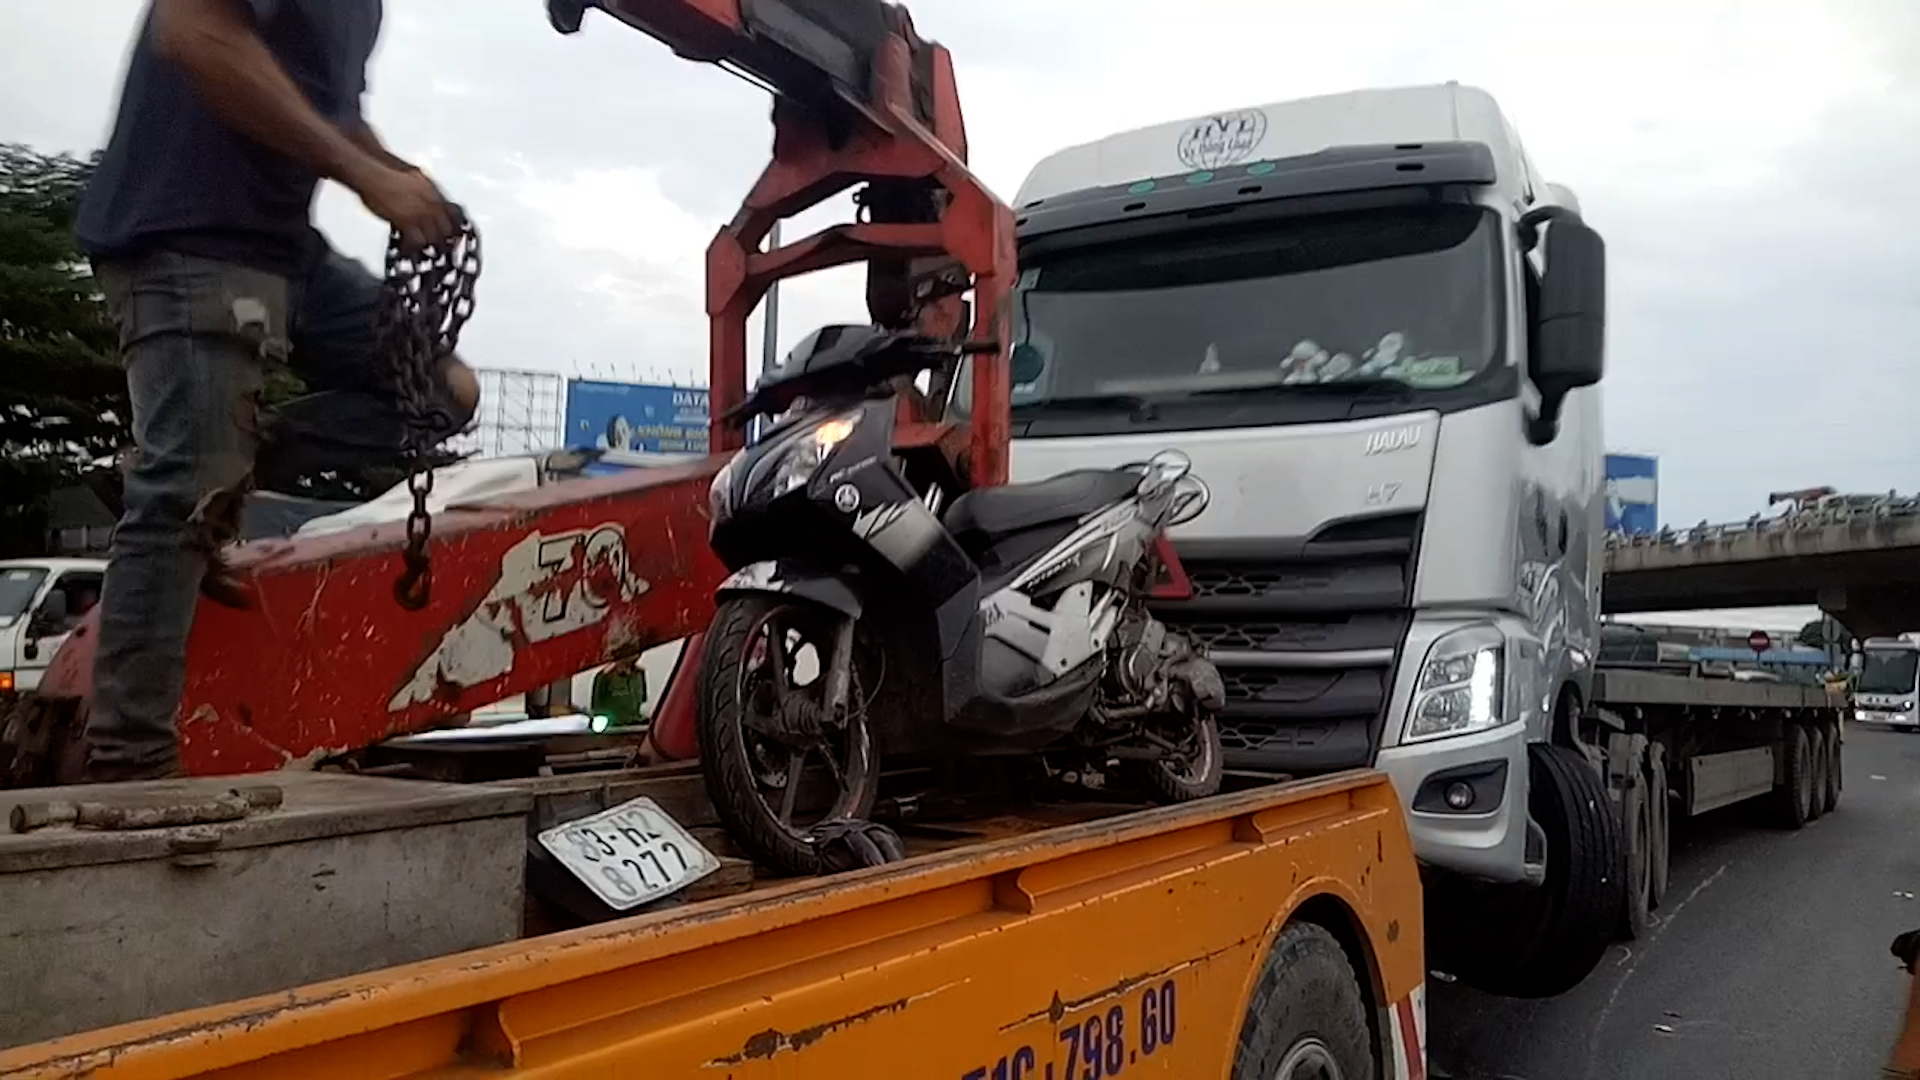 Xe máy, xe container được đưa ra khỏi hiện trường. Ảnh: Trần Minh